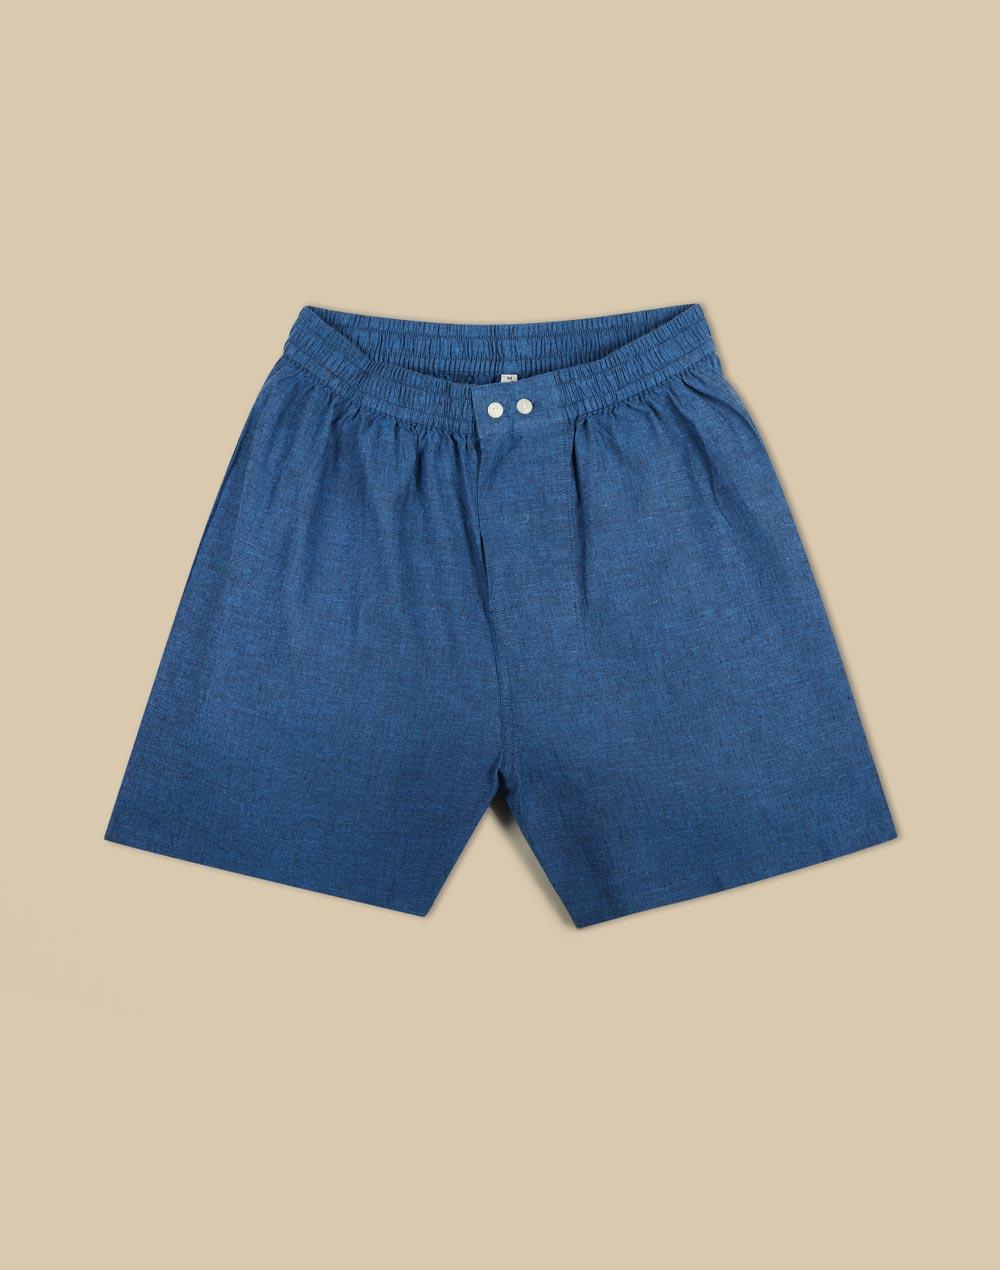 light blue cotton boxer shorts